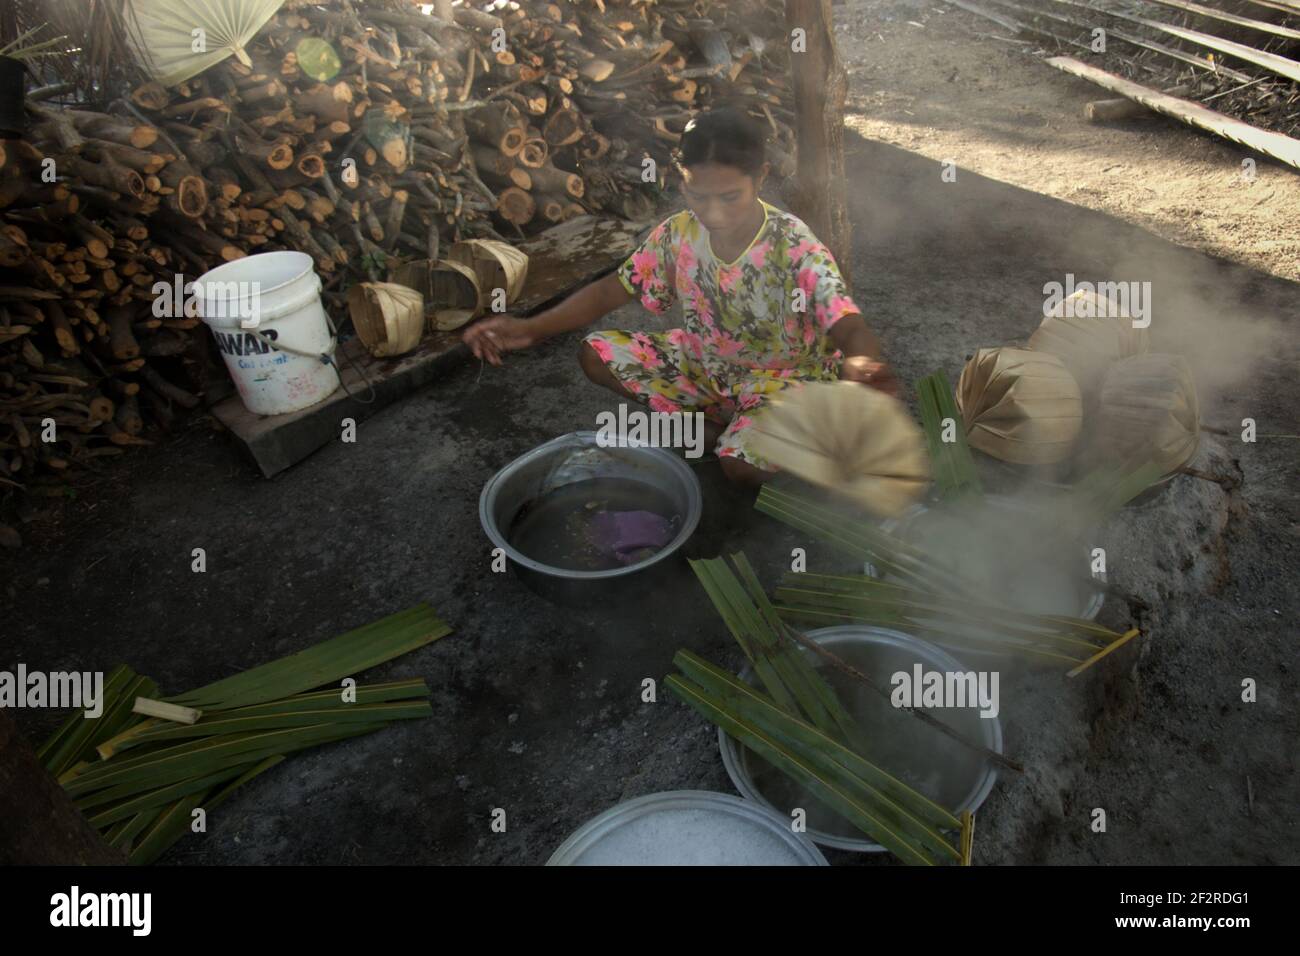 Yunce Unbanu linfa bollente di palma per fare zucchero di palma nel villaggio di Oehandi, Isola di Rote, Indonesia. Lo zucchero di palma è una fonte alternativa di reddito per gli abitanti del villaggio che vivono nell'isola. Foto Stock